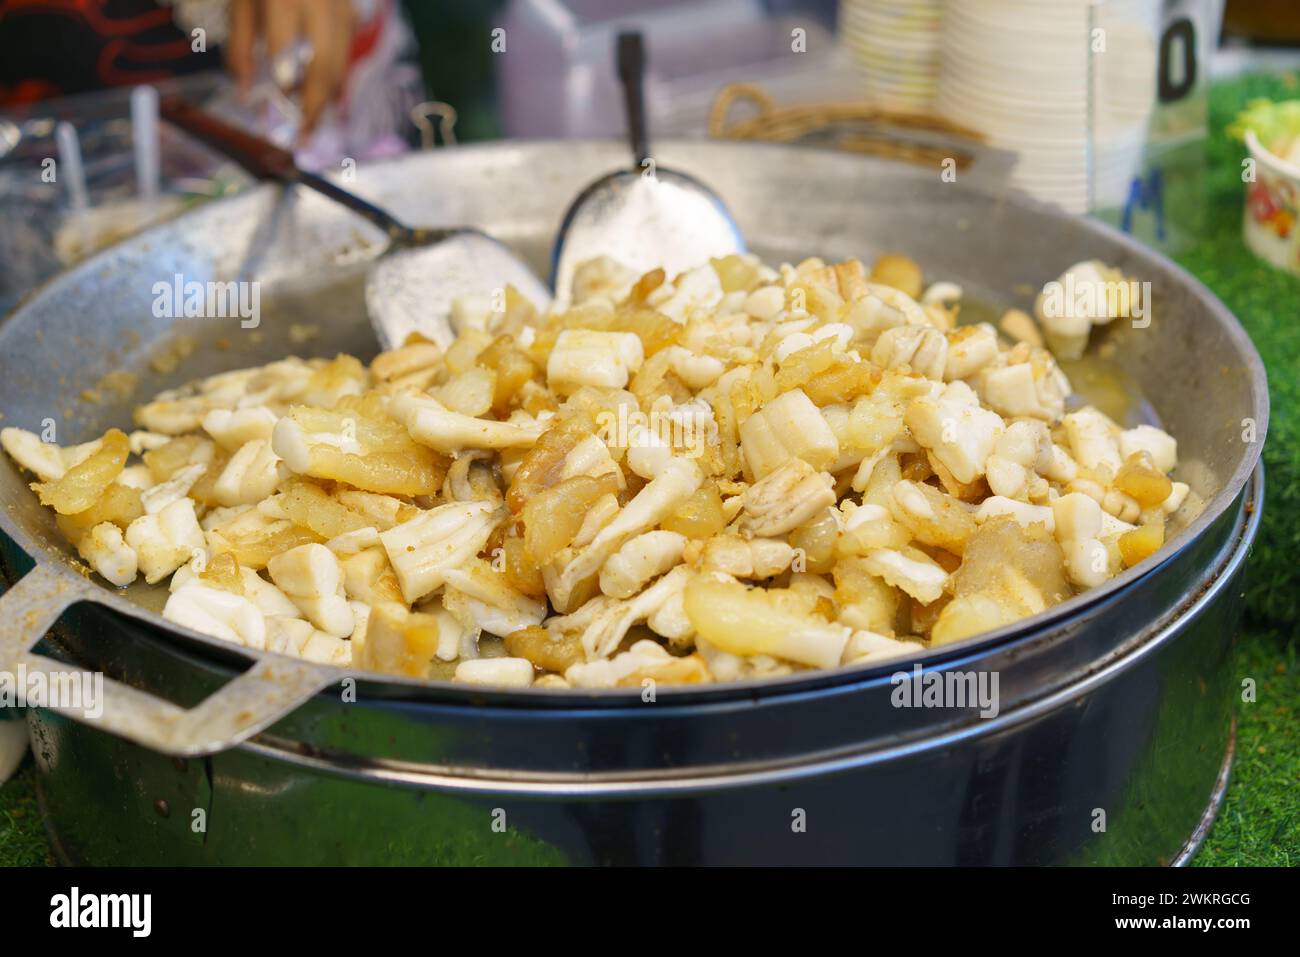 Il calamaro fresco viene fritto alla perfezione in una grande padella in un vivace mercato di Street food, uno spuntino popolare tra la gente del posto e i turisti Foto Stock